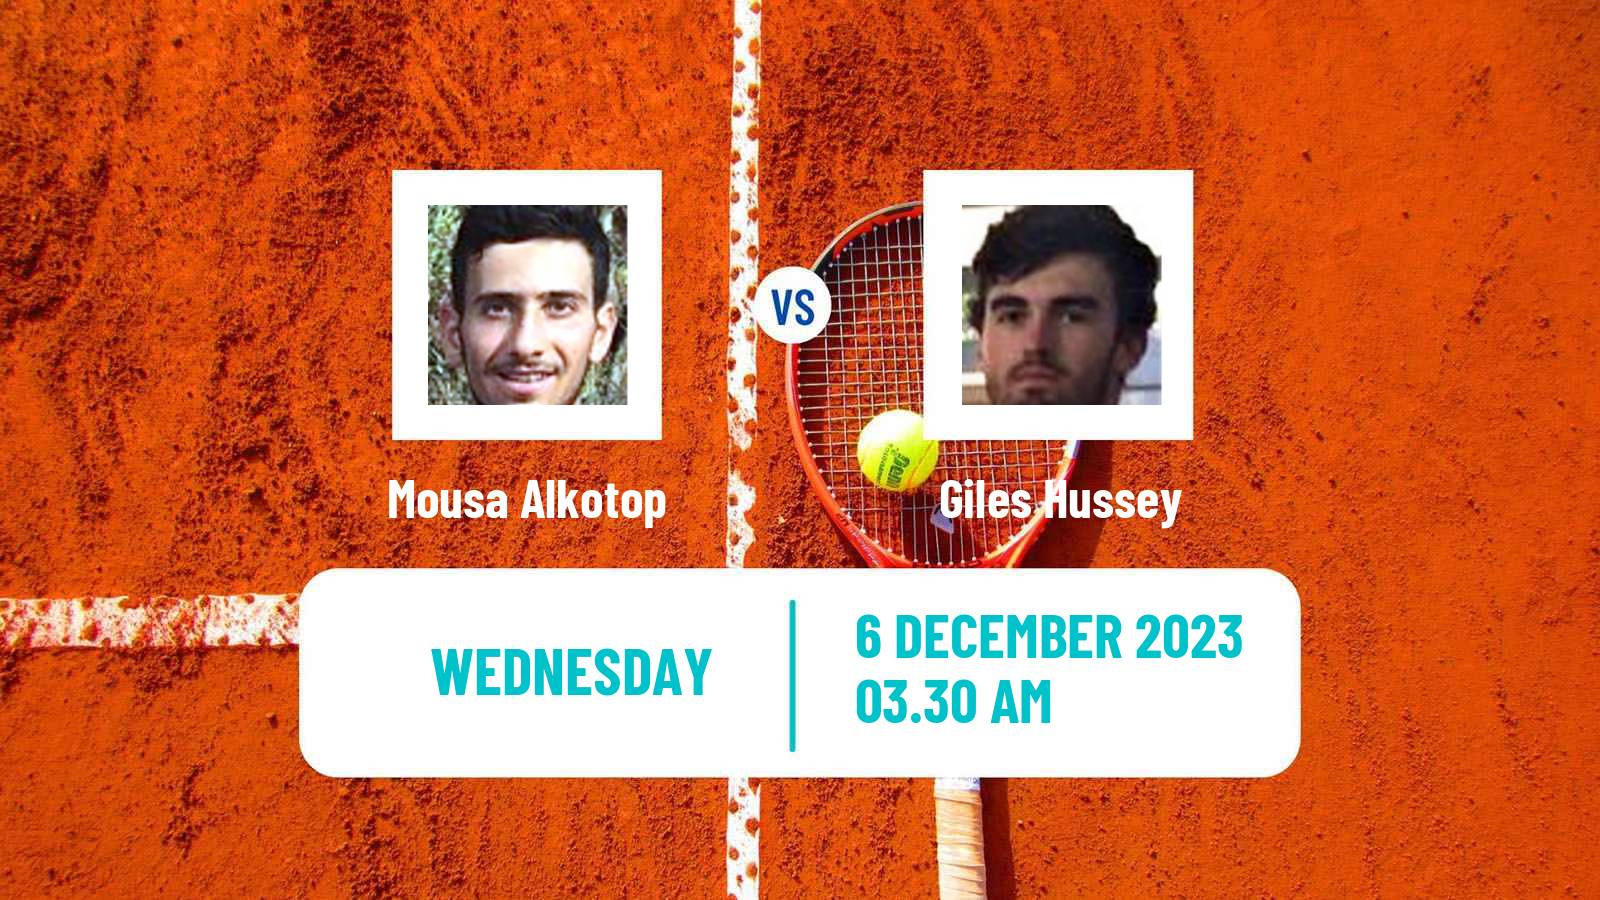 Tennis ITF M15 Zahra 2 Men 2023 Mousa Alkotop - Giles Hussey